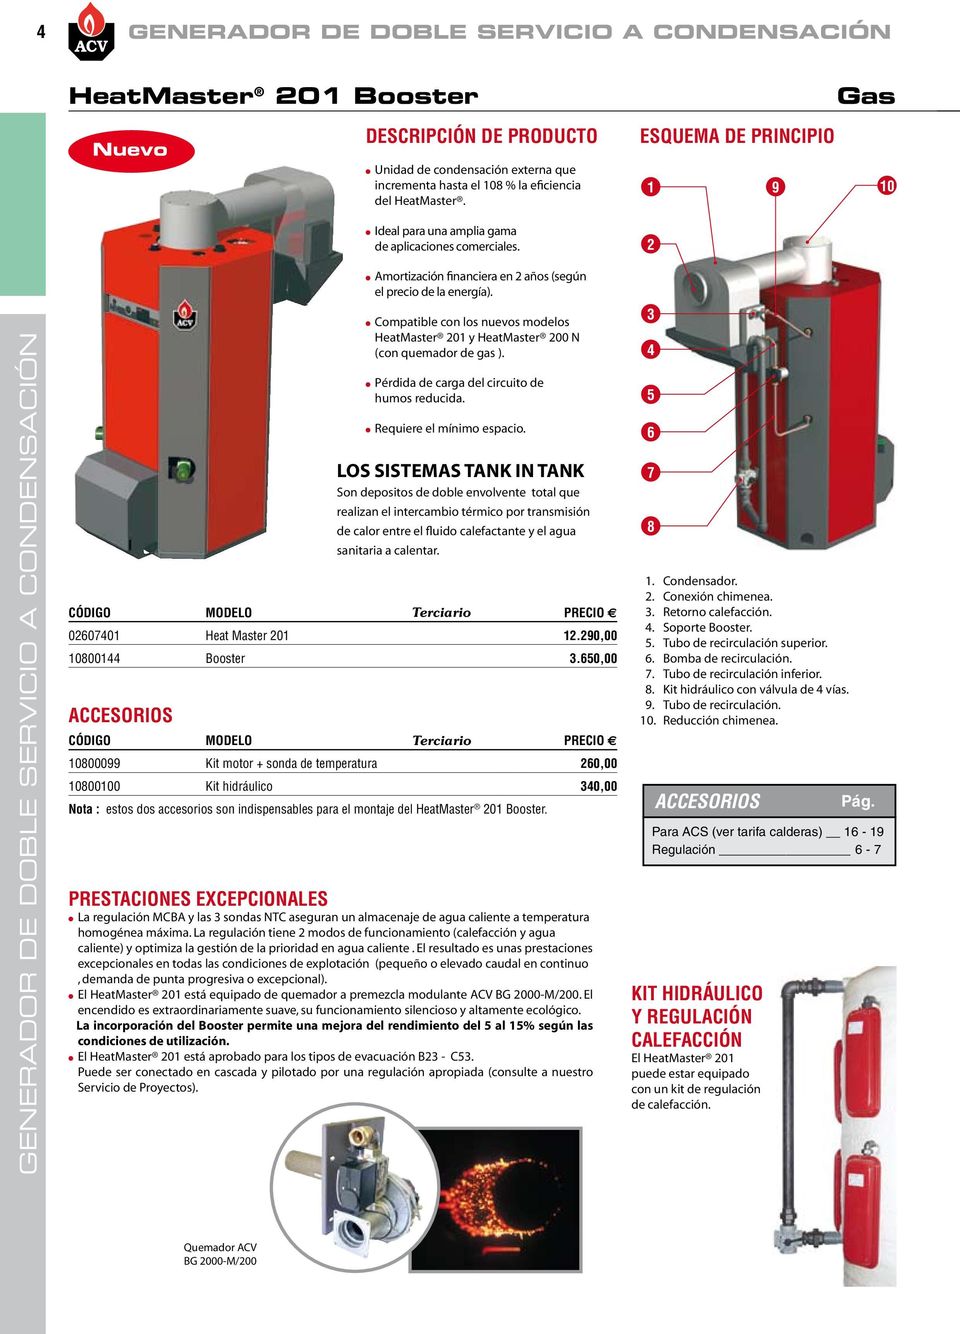 Compatible con los nuevos modelos HeatMaster 0 y HeatMaster 00 N (con quemador de gas ). Pérdida de carga del circuito de humos reducida. Requiere el mínimo espacio.